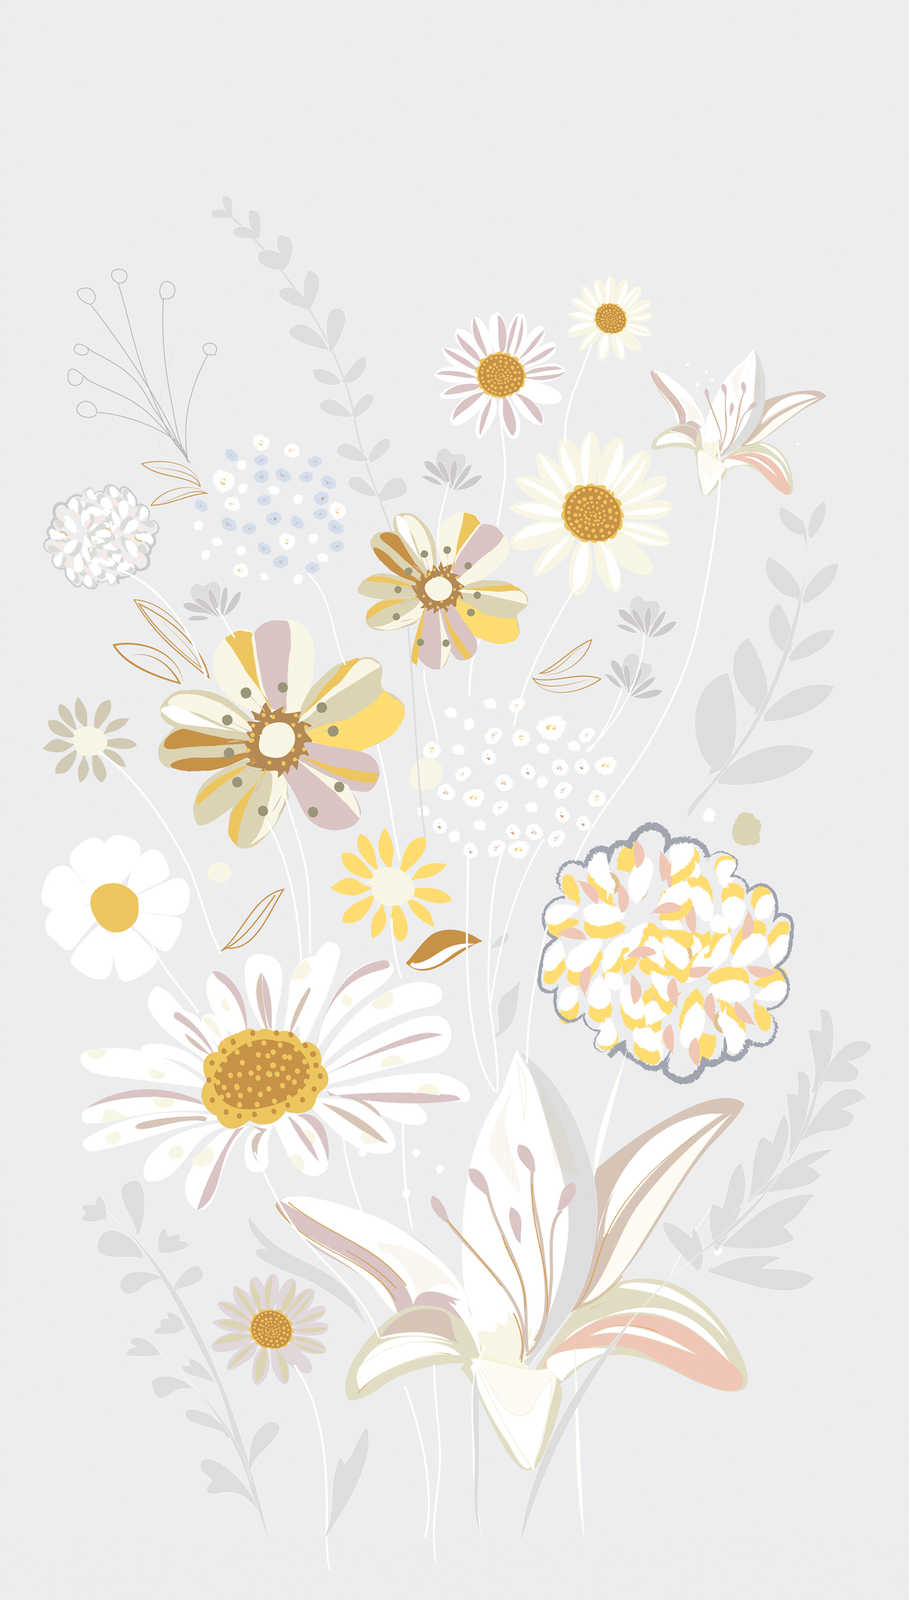             Papier peint à motifs floraux avec des herbes de couleurs vives - gris, jaune, beige
        